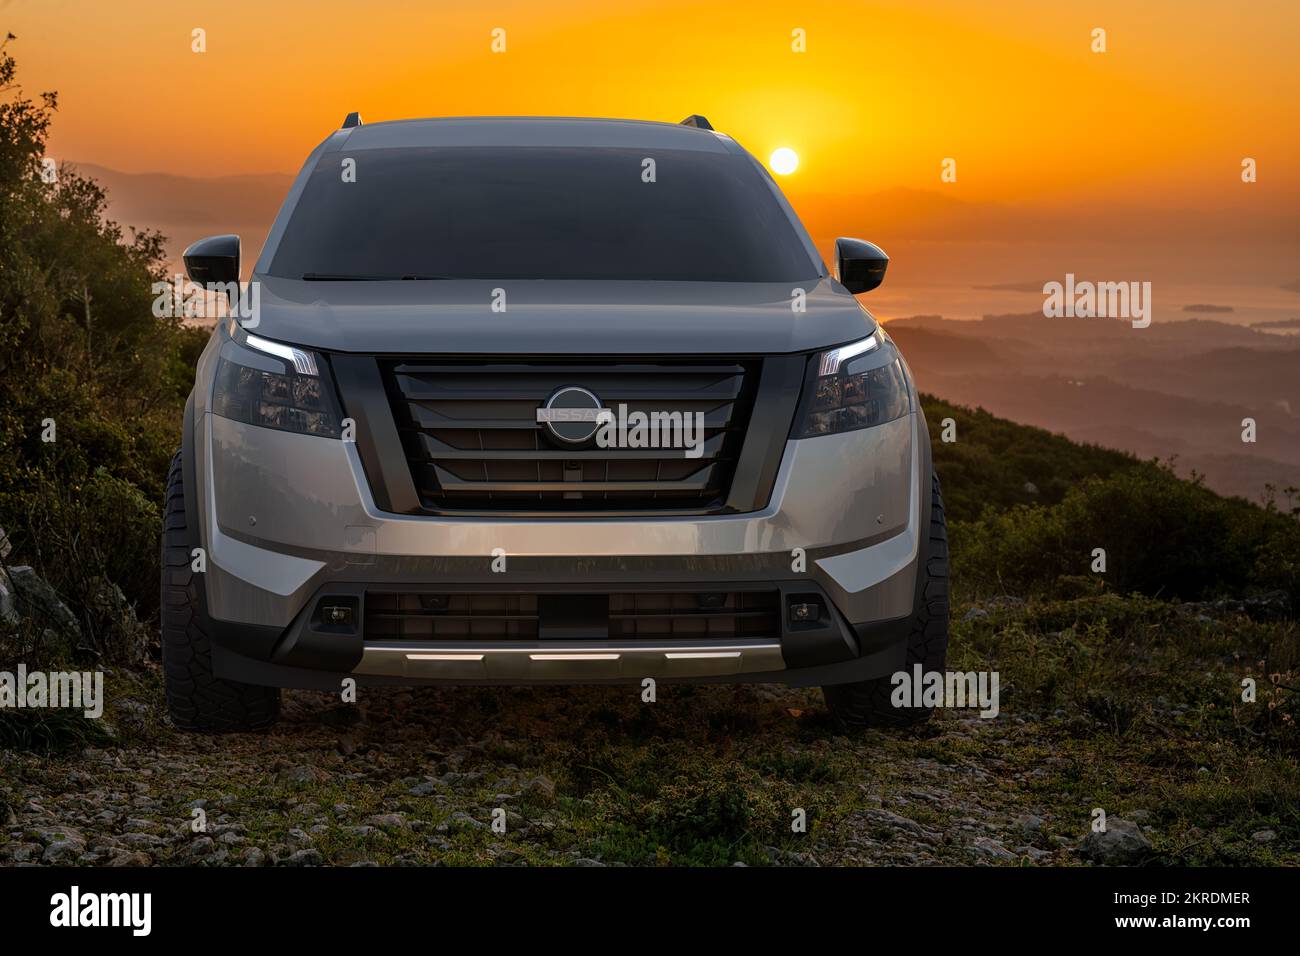 Nissan Pathfinder in de wildernis Stock Photo